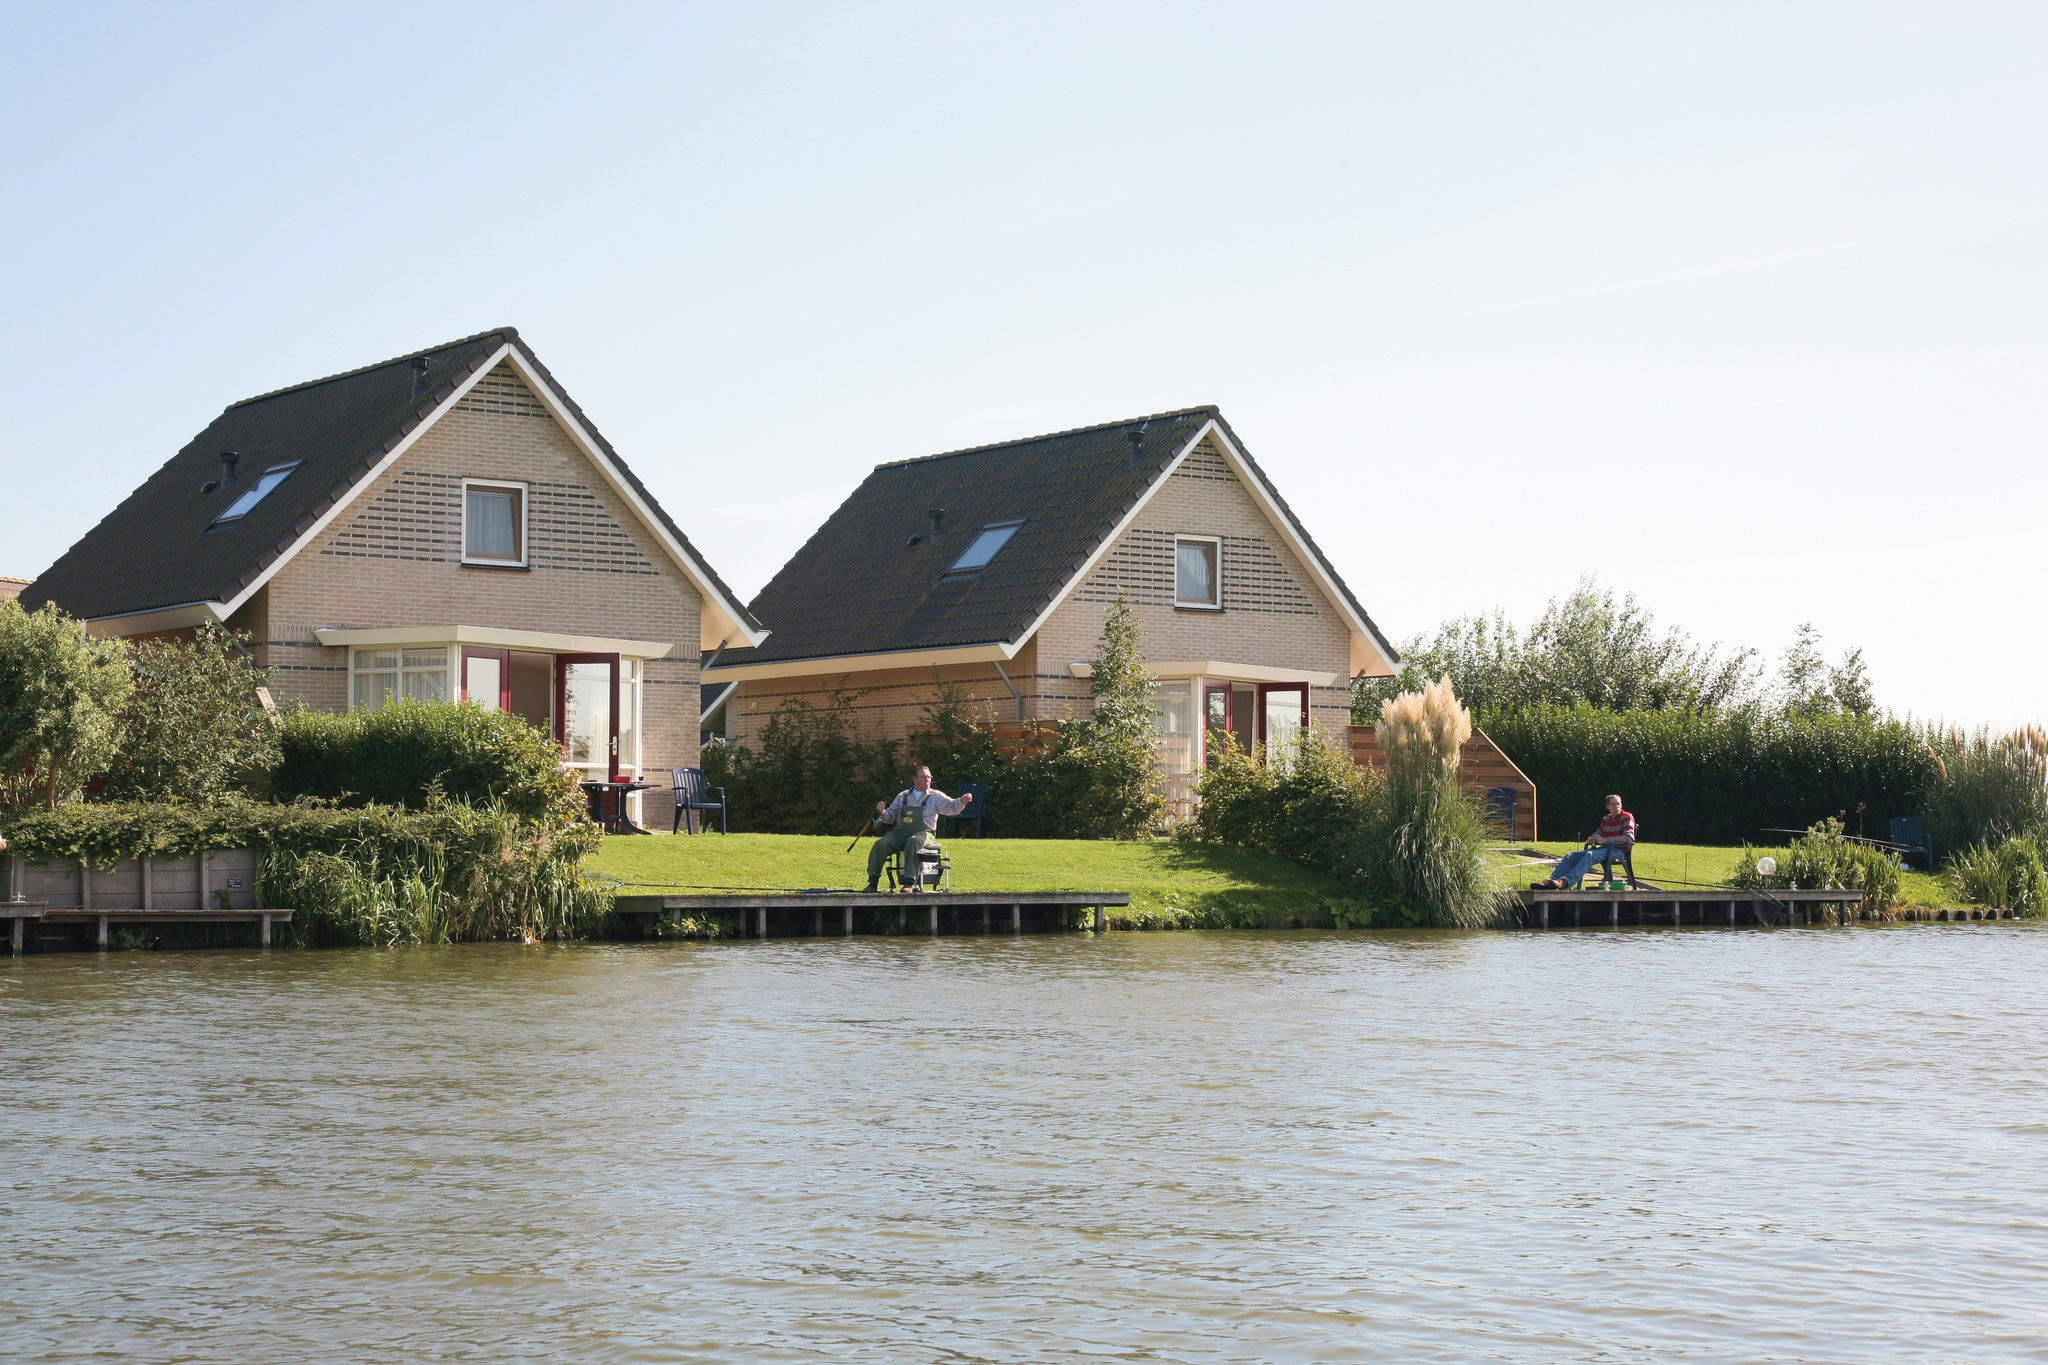 Maison avec jetée sur les eaux intérieures près d'IJsselmeer